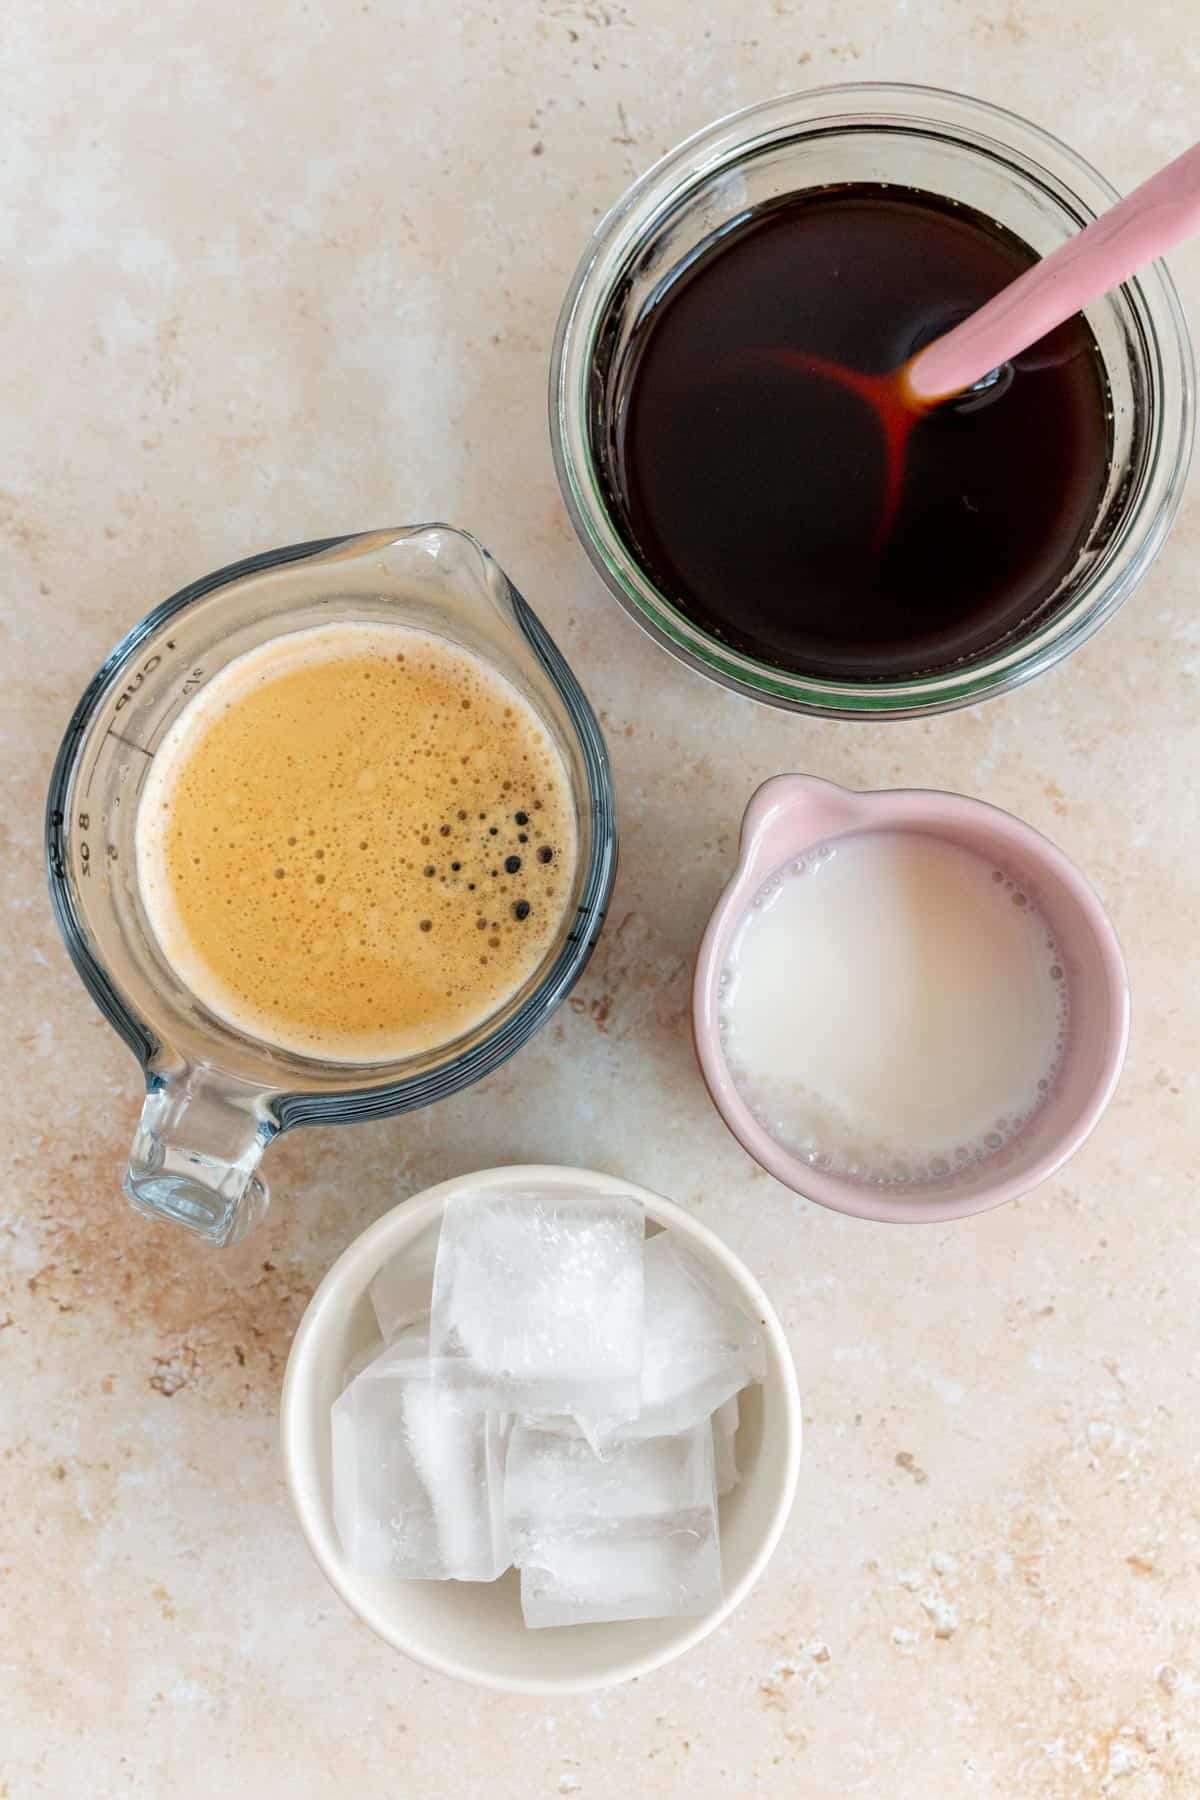 Ingredients needed to make an iced apple crisp oat milk shaken espresso.